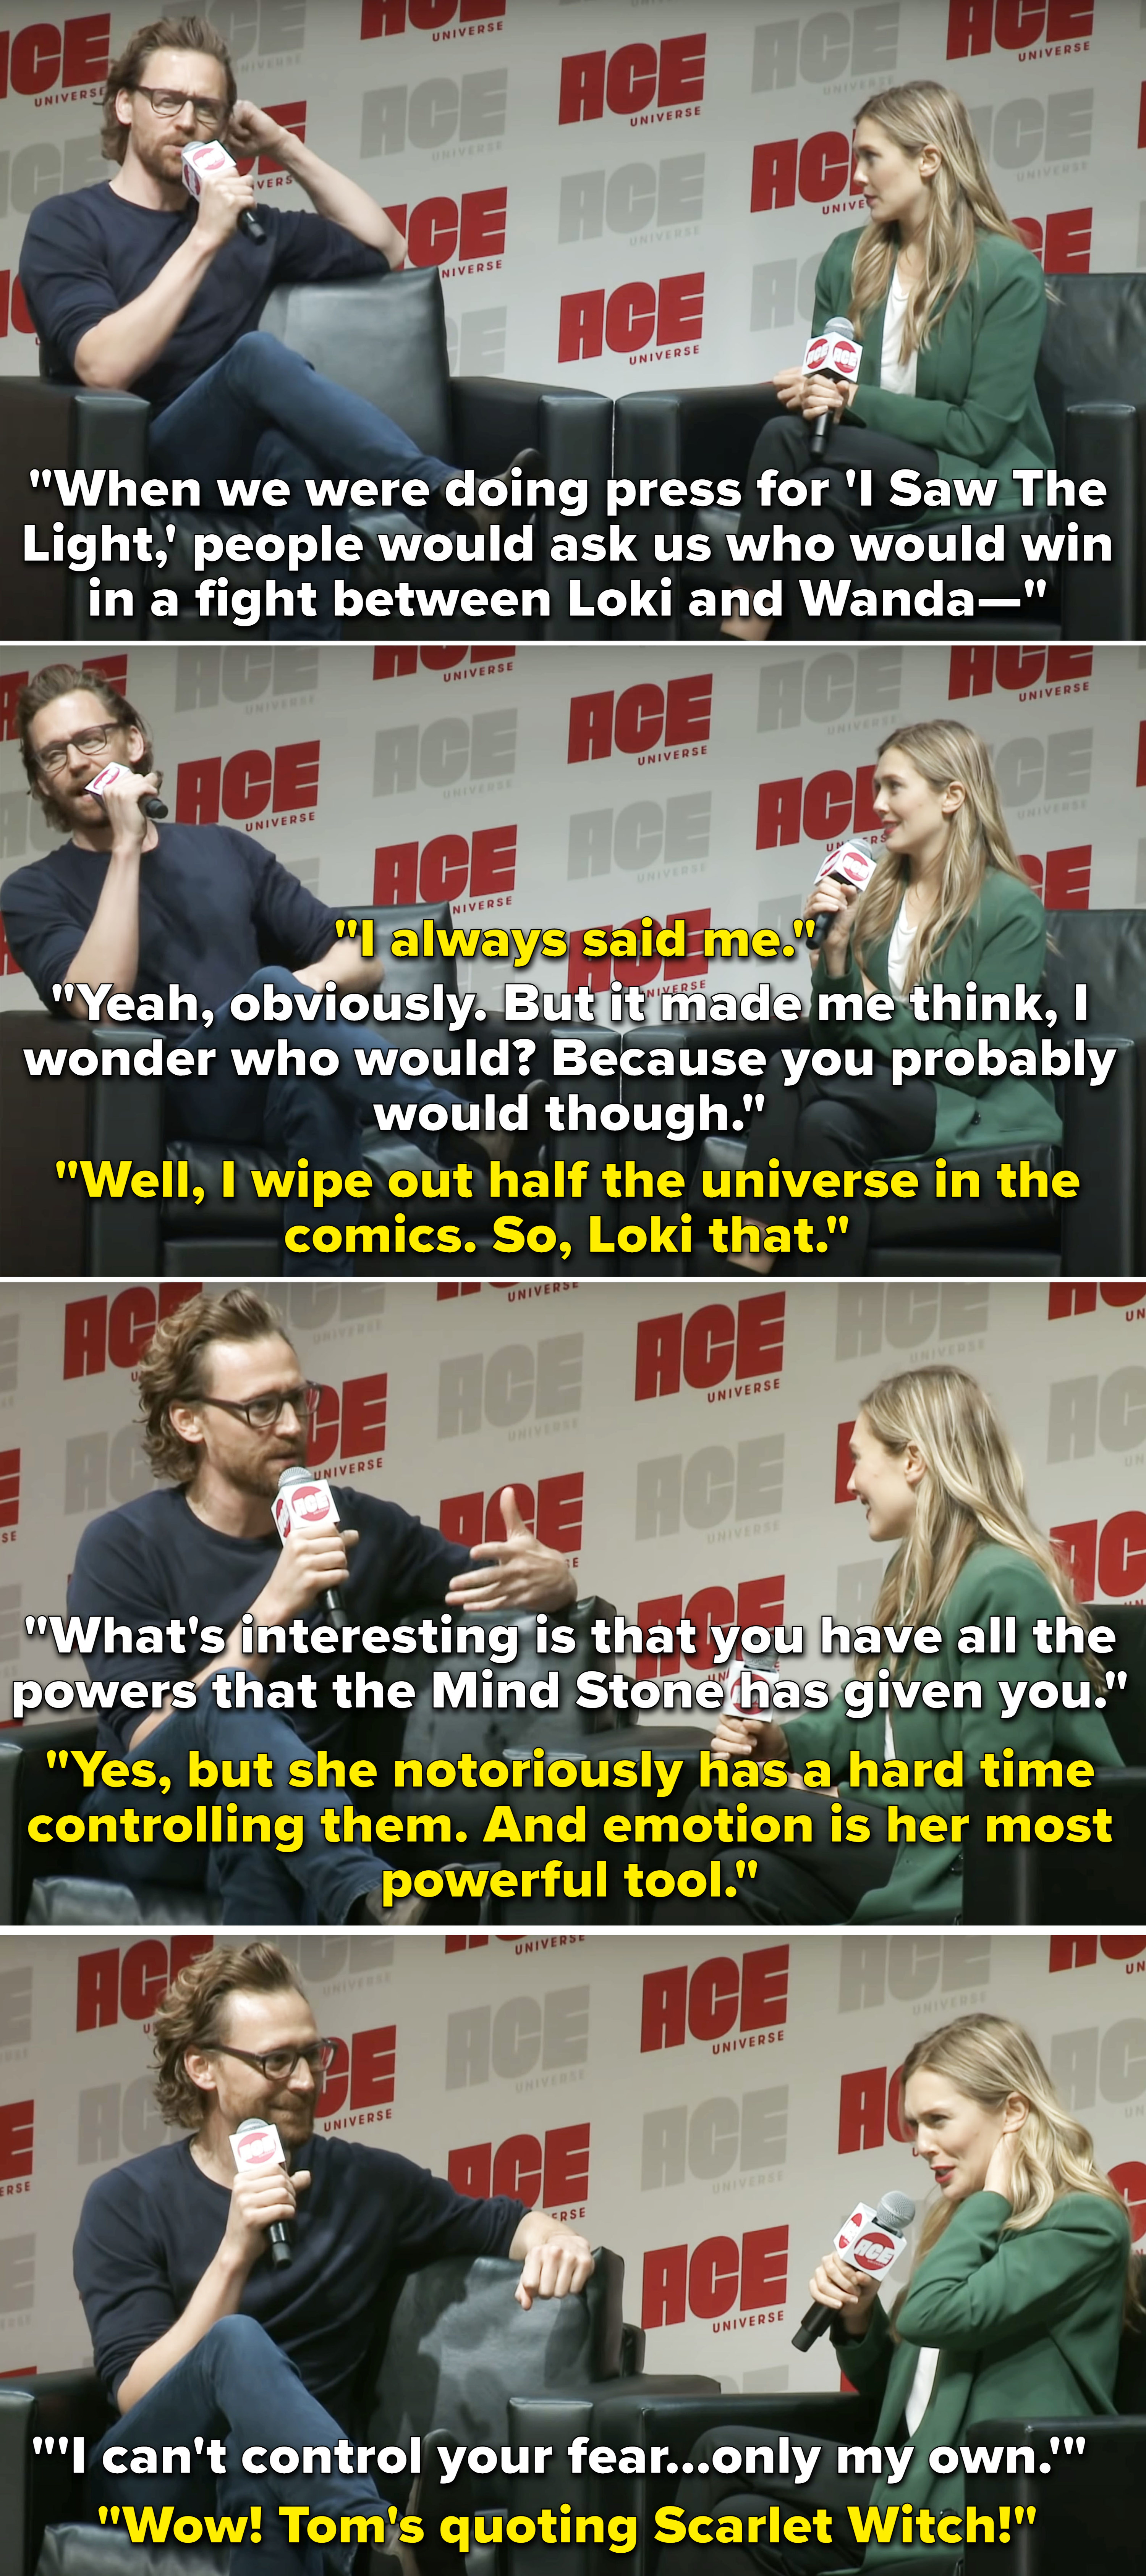 Tom Hiddleston and Elizabeth Olsen in an interview.